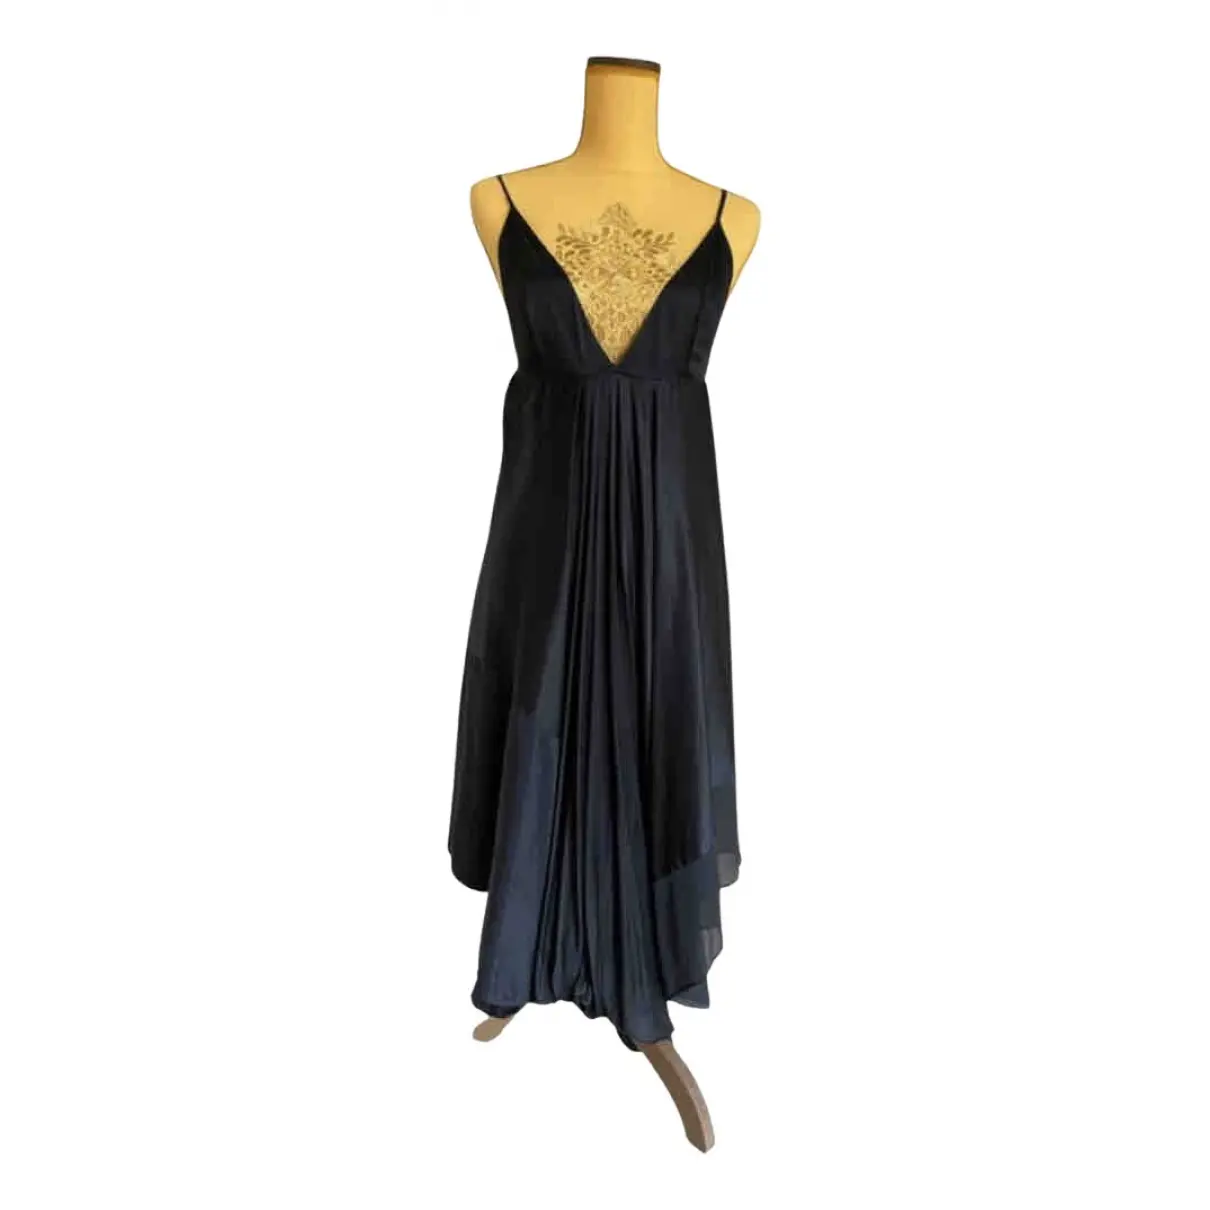 Silk mid-length dress Ann Demeulemeester